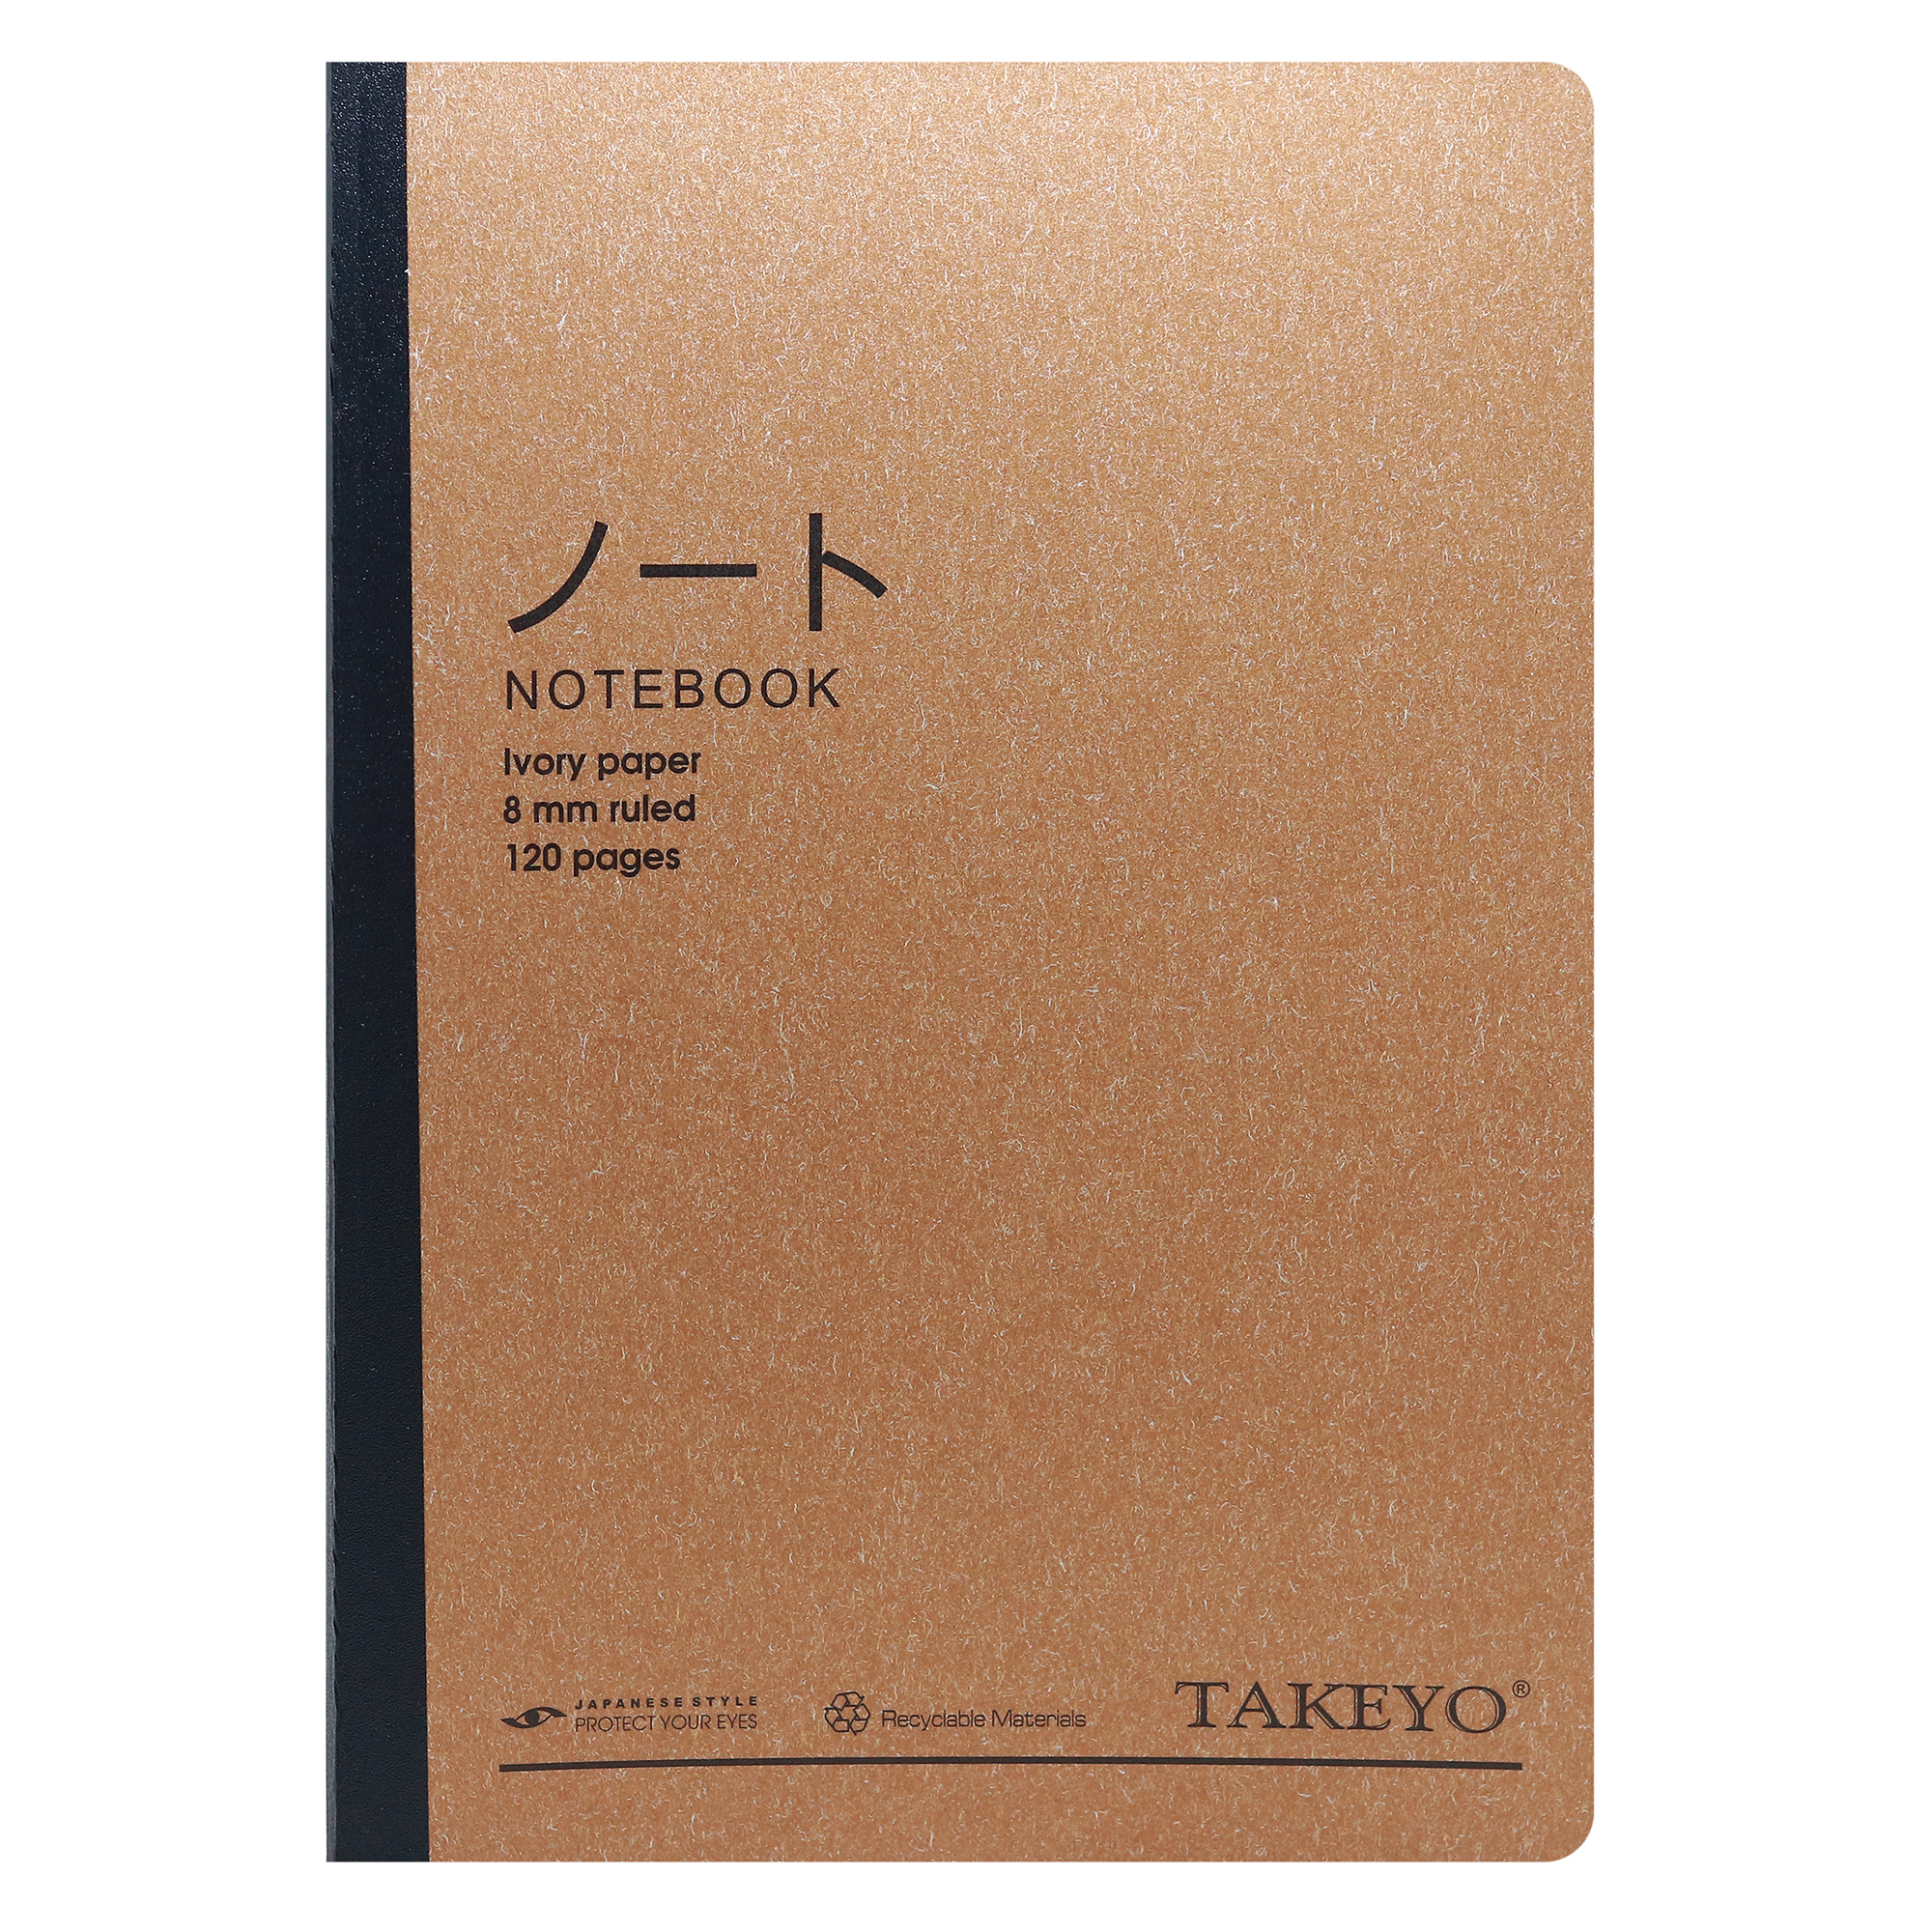 Hình ảnh Vở Bìa Khâu B5 Kẻ Ngang Takeyo 120 Trang (Bìa Ngẫu Nhiên)